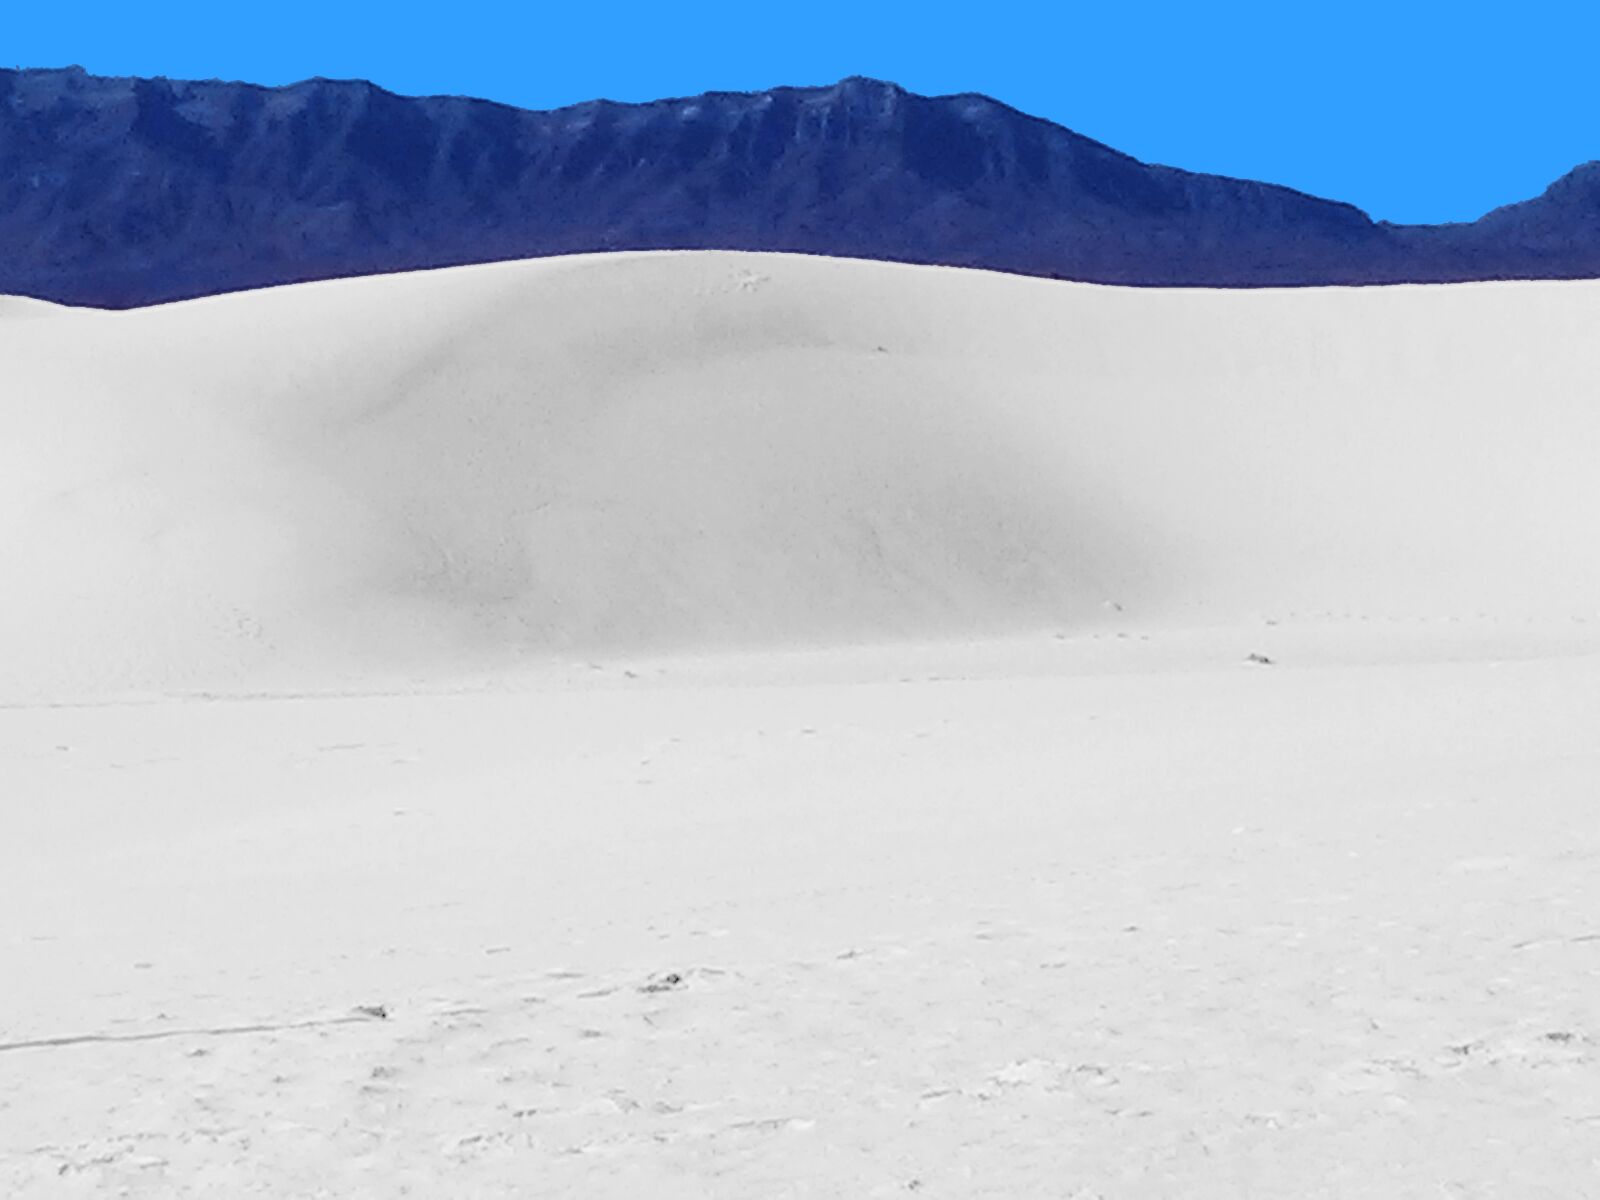 LG Nexus 4 sample photo. Dune, sand, desert photography